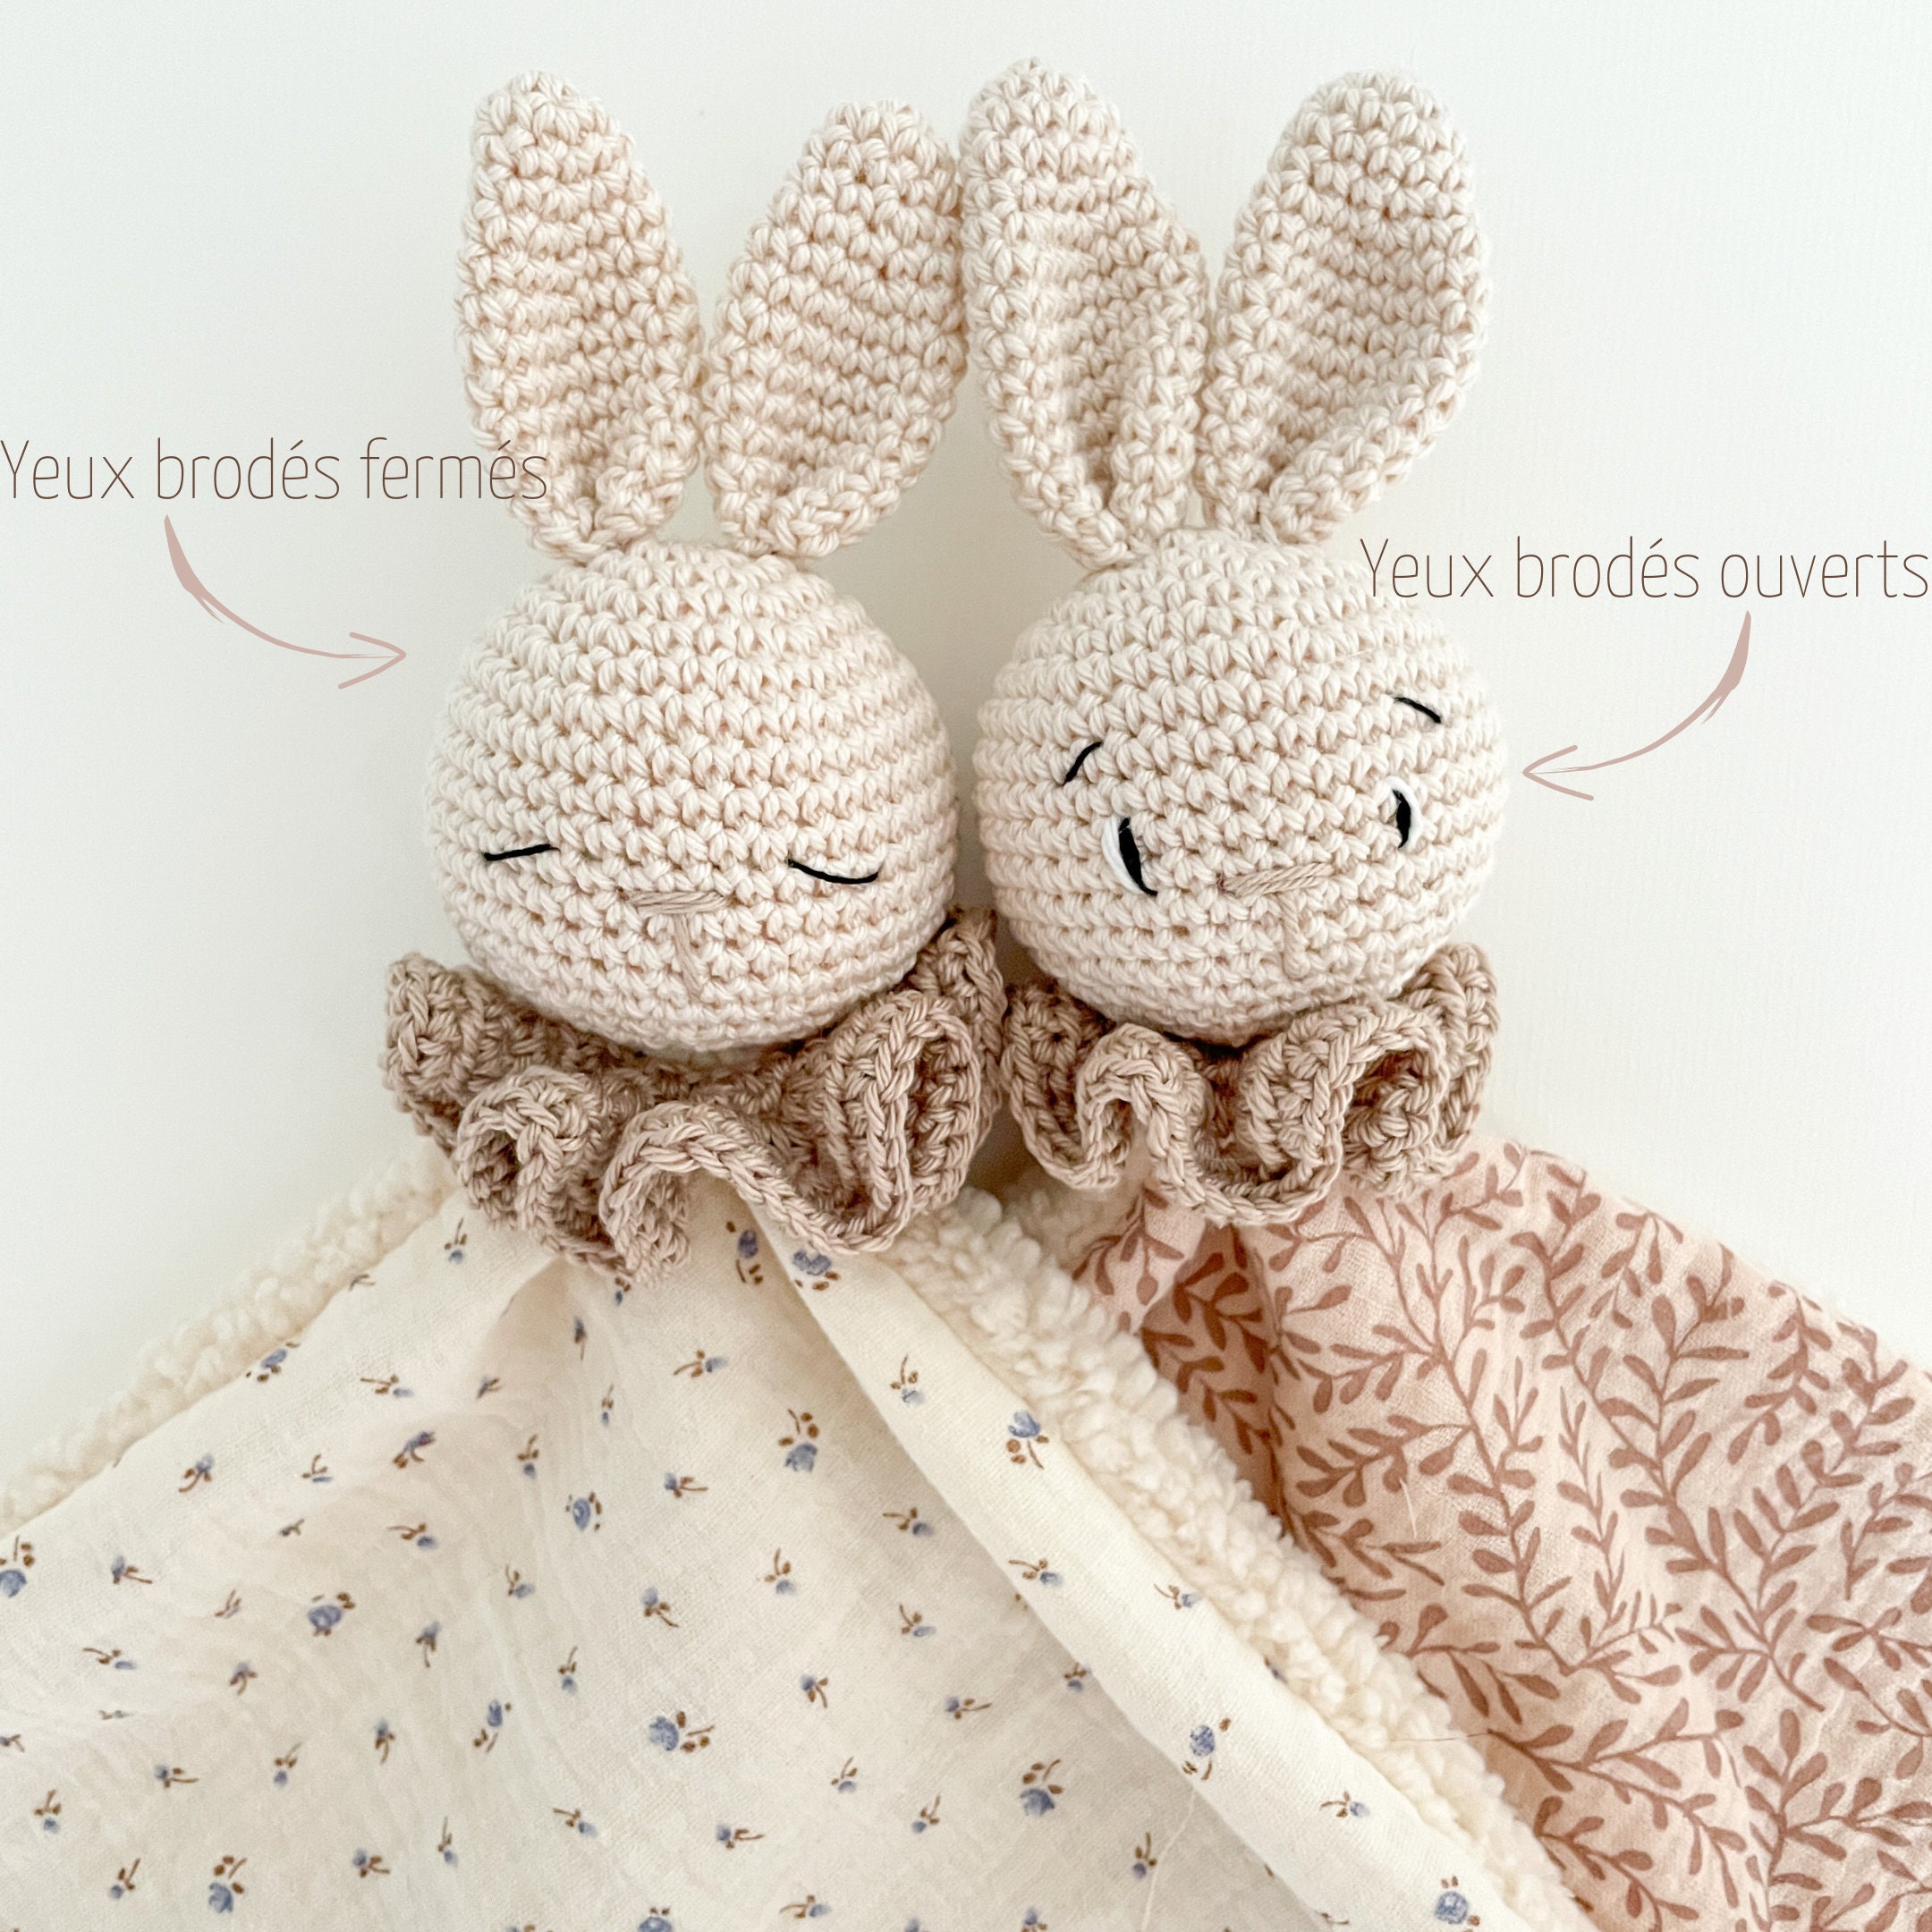 Mikito - Doudou Bébé 30x30 cm en Coton Bio - Langes Bébé en Coton - Parfait  pour Envelopper Votre